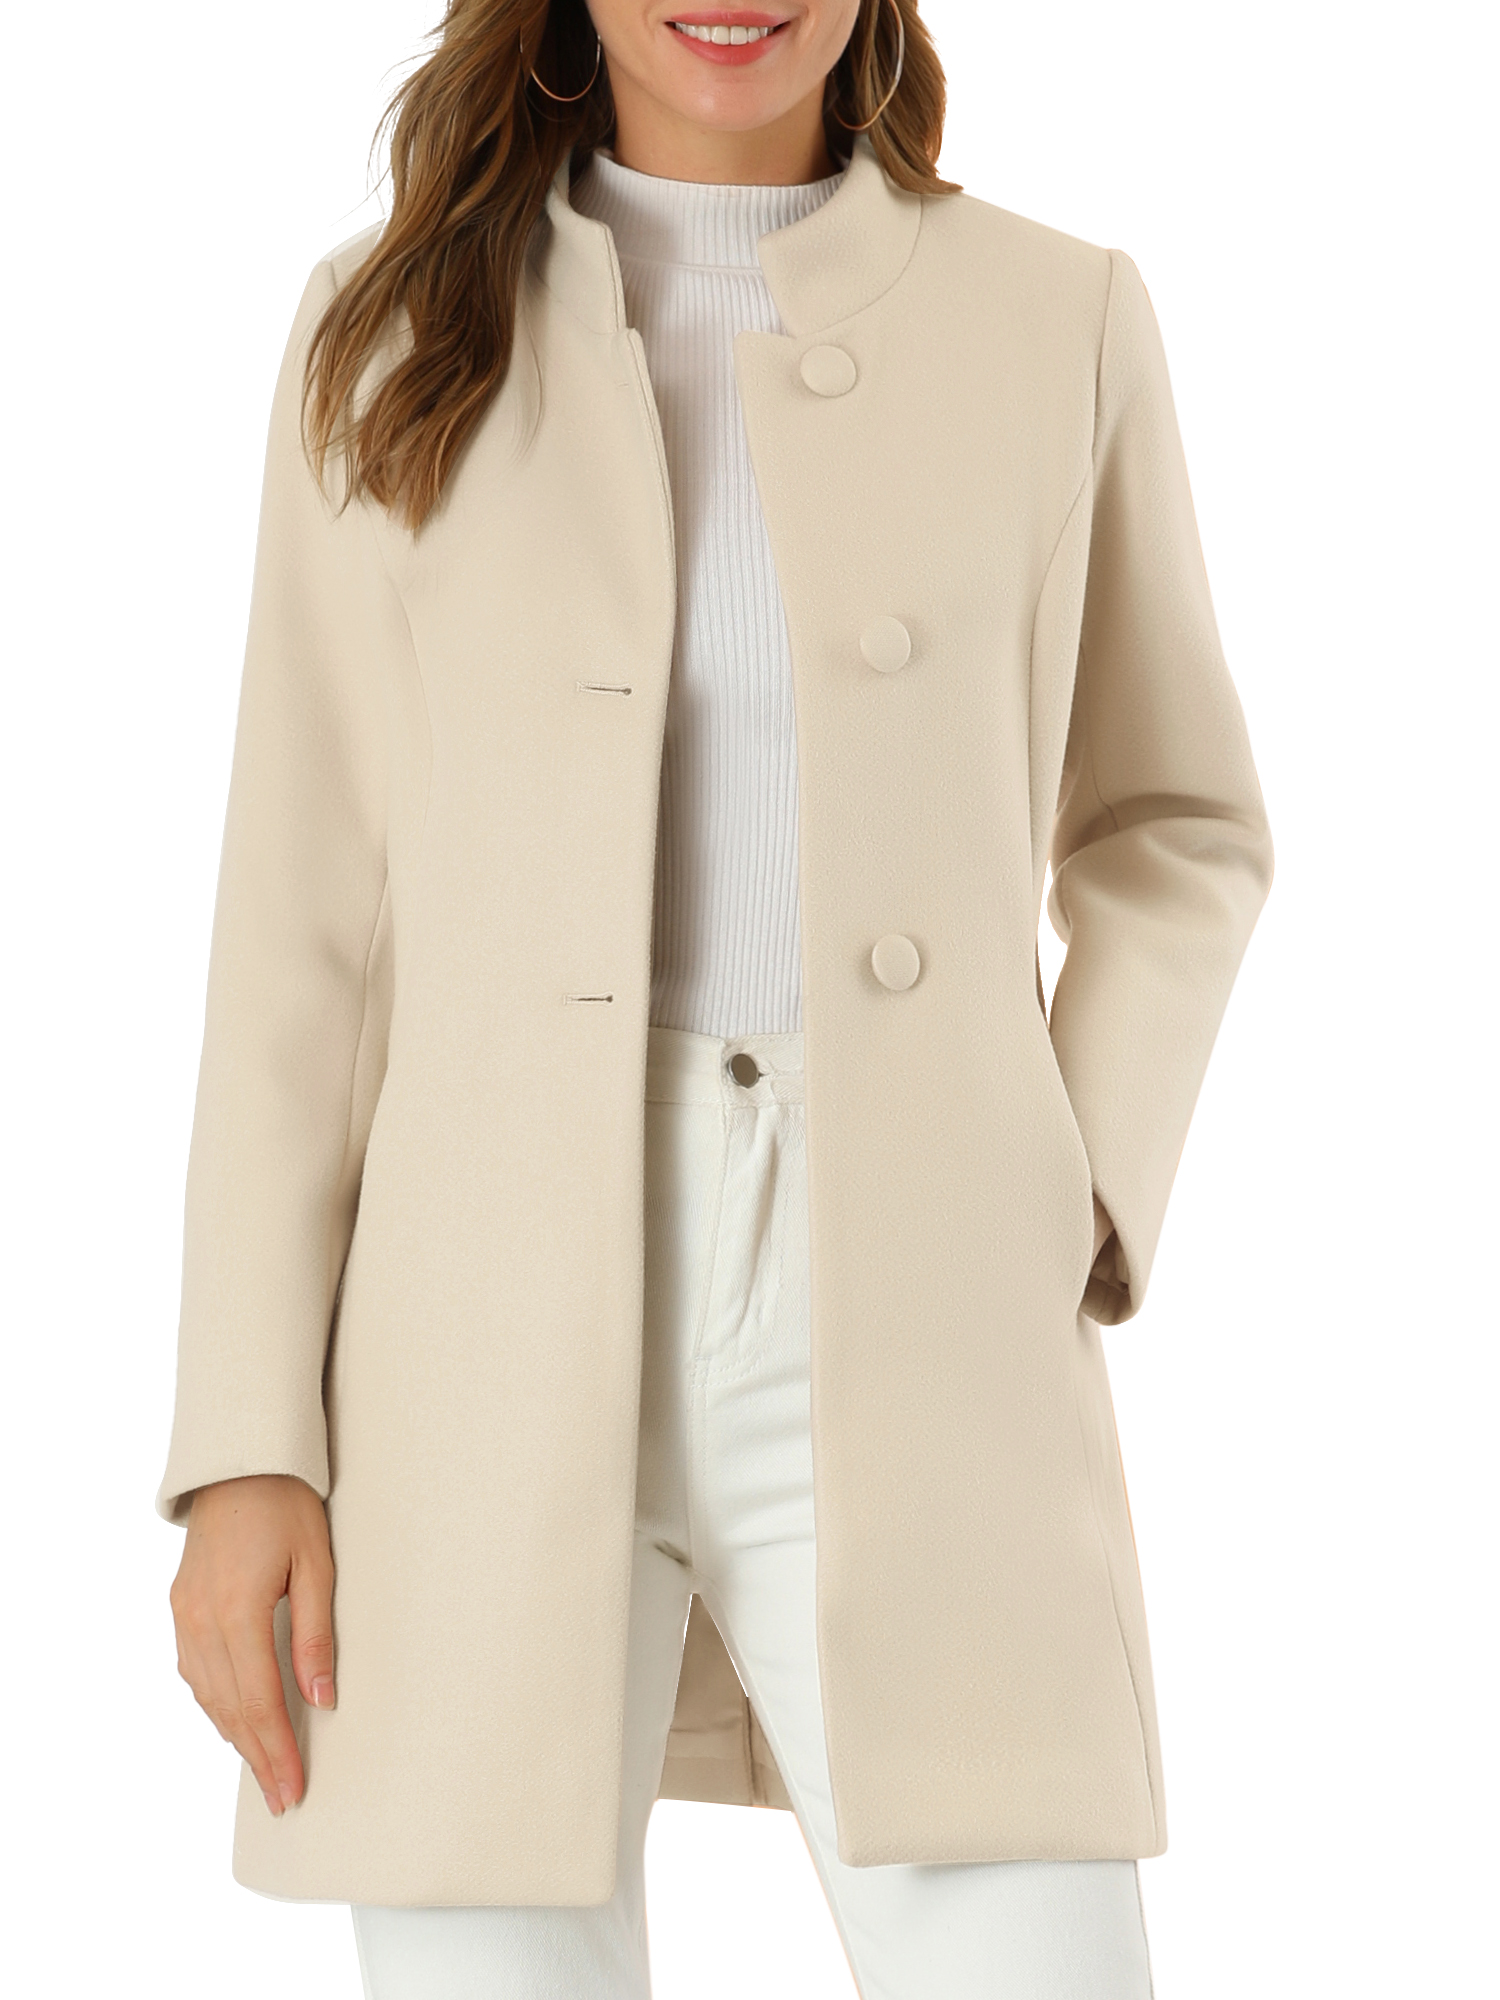 Allegra K Junior's Winter Overcoat Stand Collar Single Breasted Long Coat -  Walmart.com